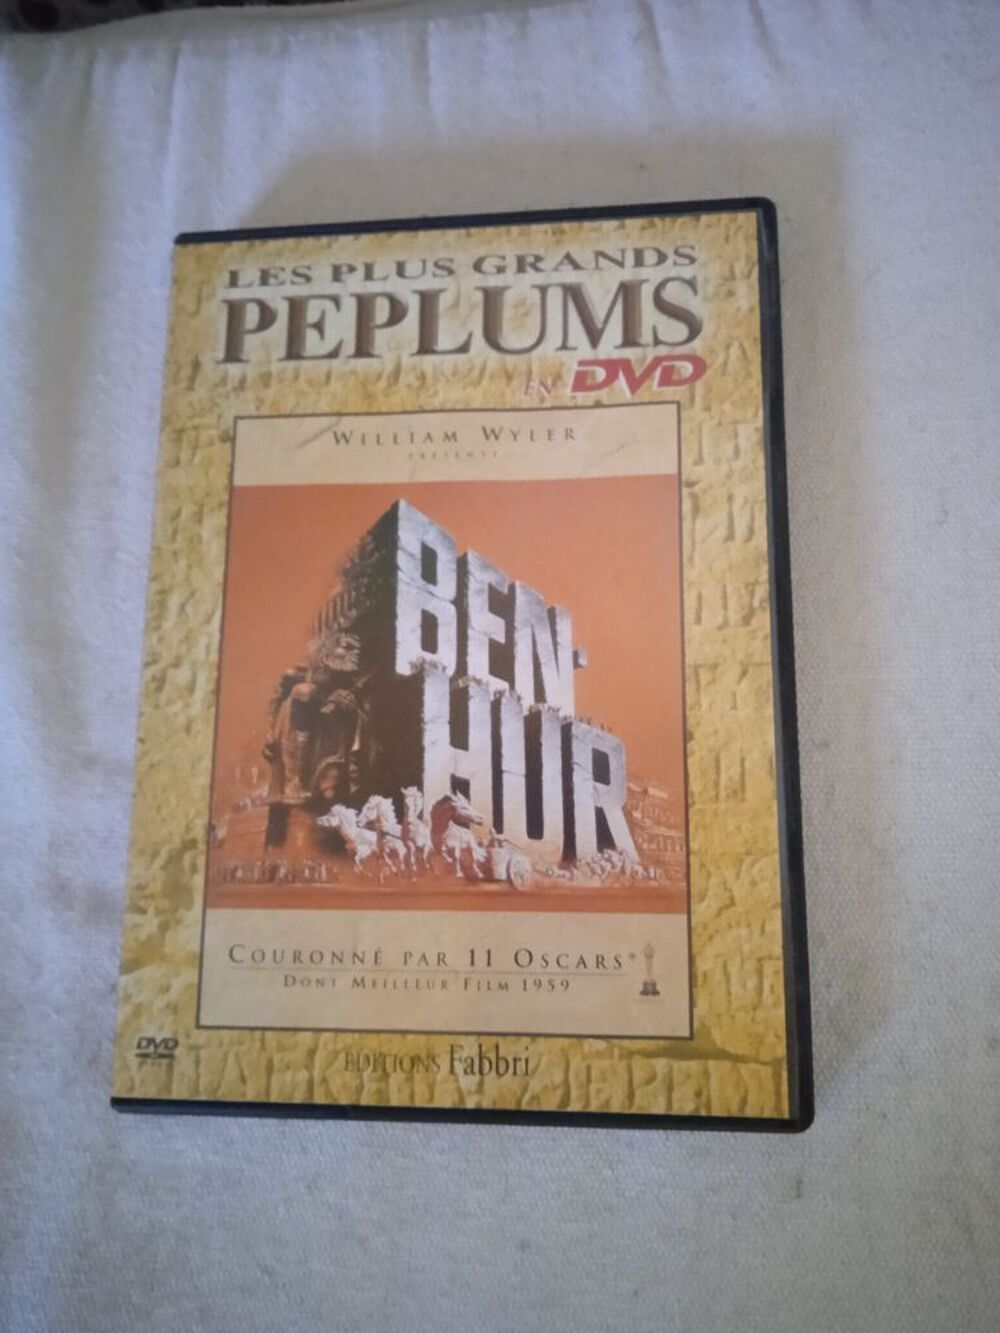 DVD Ben-Hur
2001
Excellent &eacute;tat
En Fran&ccedil;ais
Multi langues DVD et blu-ray